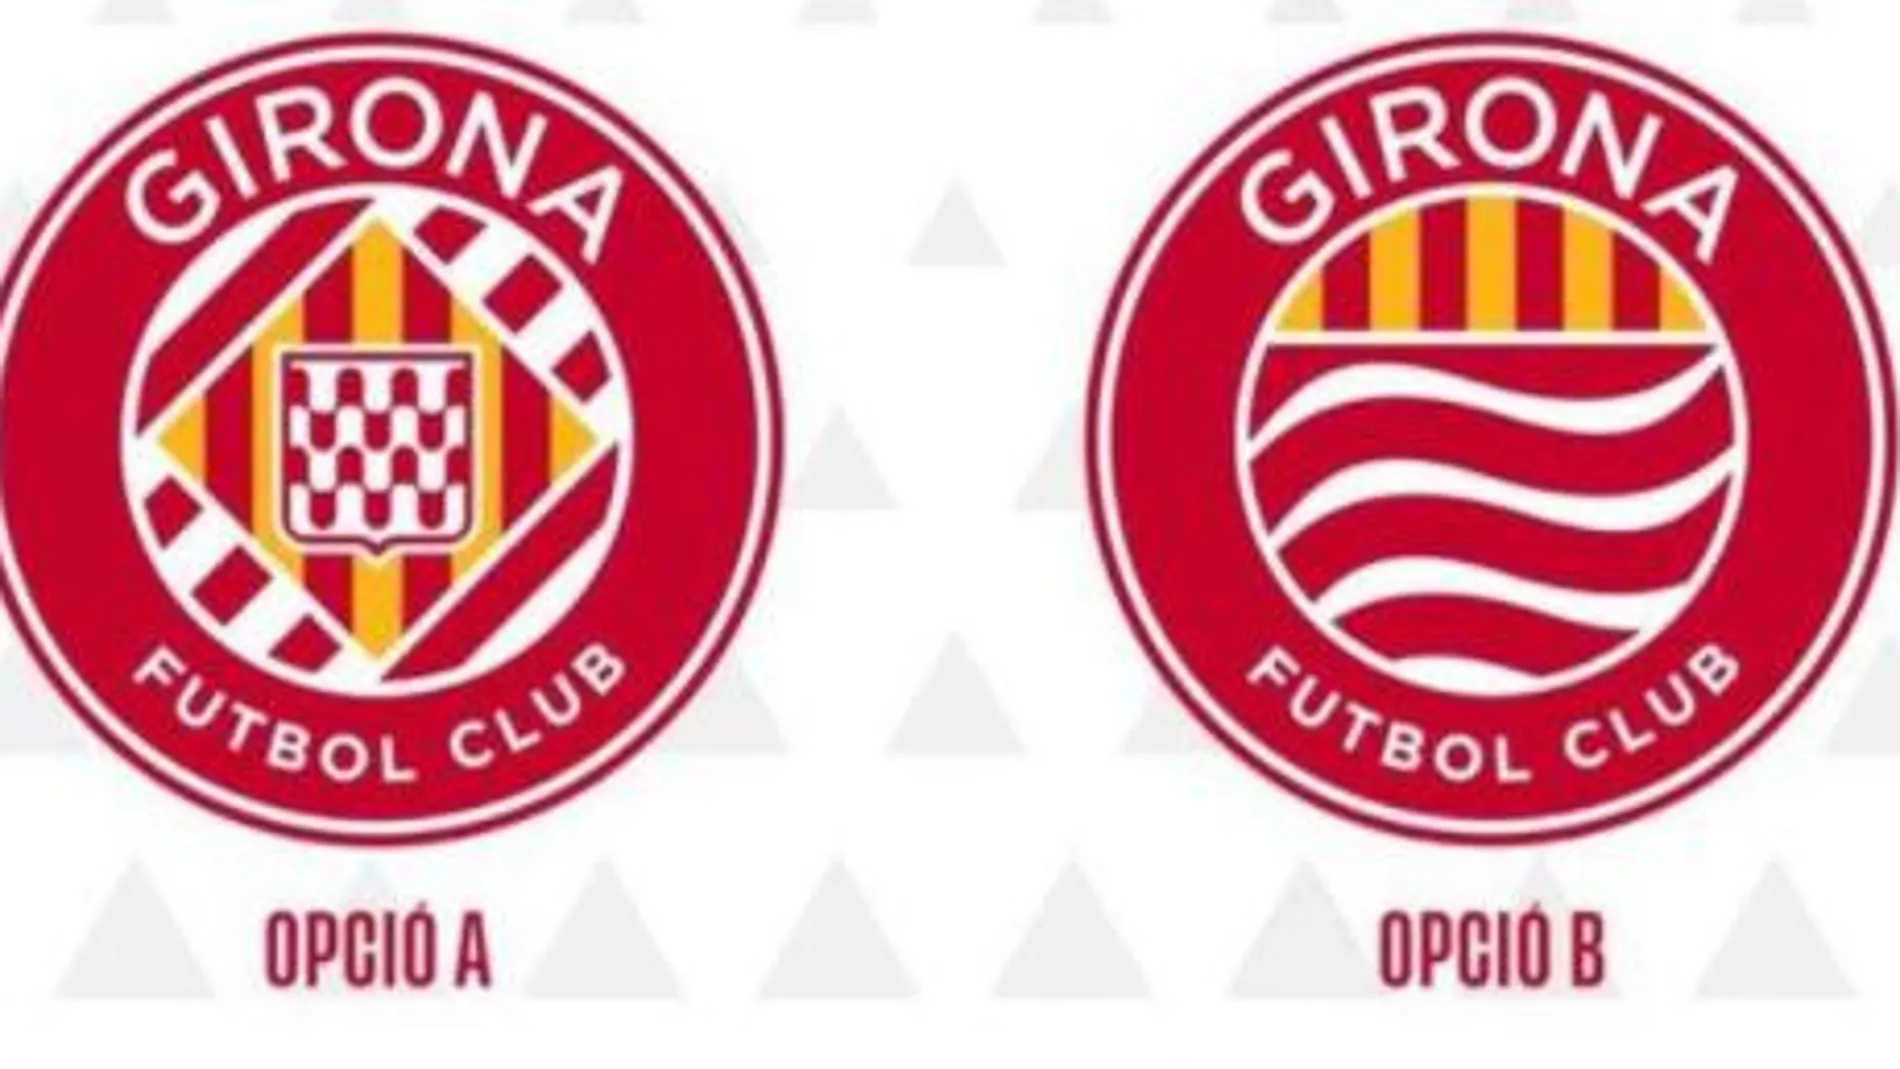 Opciones para el nuevo escudo del Girona